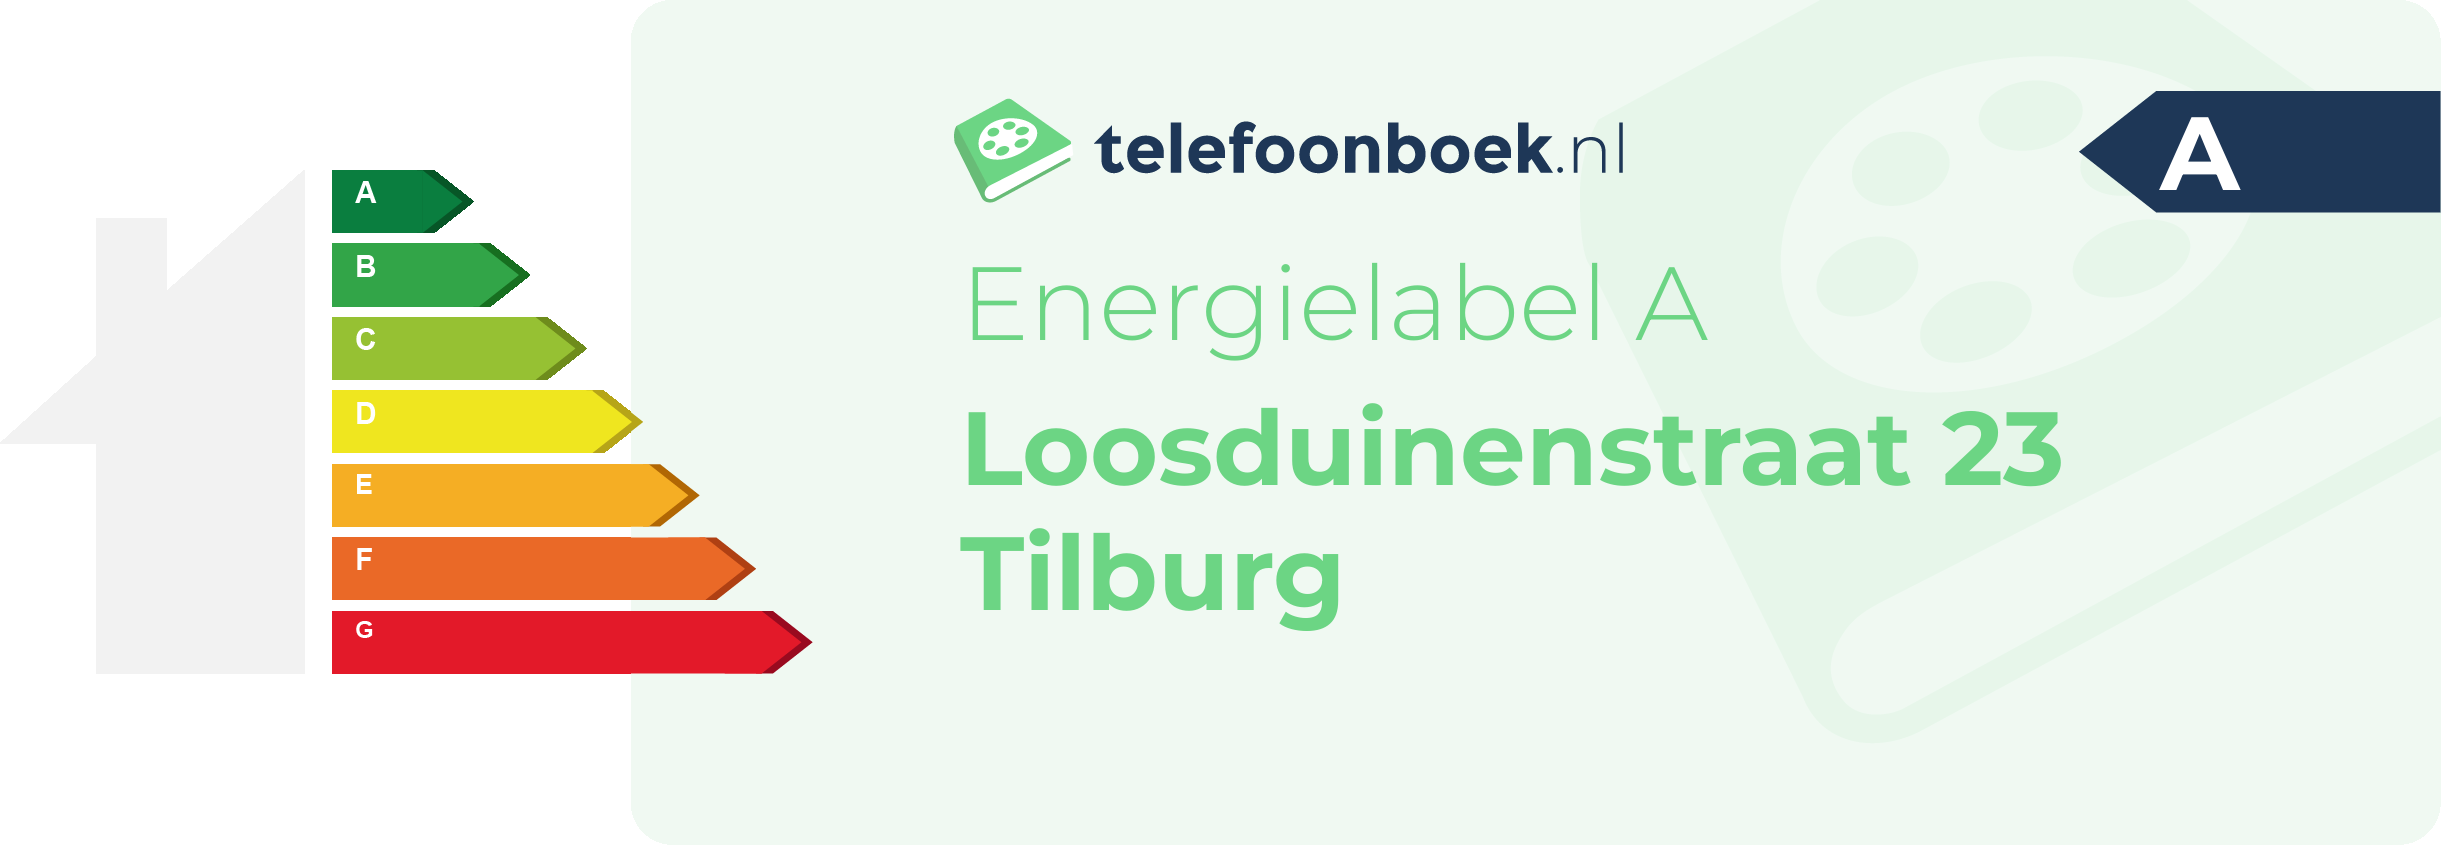 Energielabel Loosduinenstraat 23 Tilburg